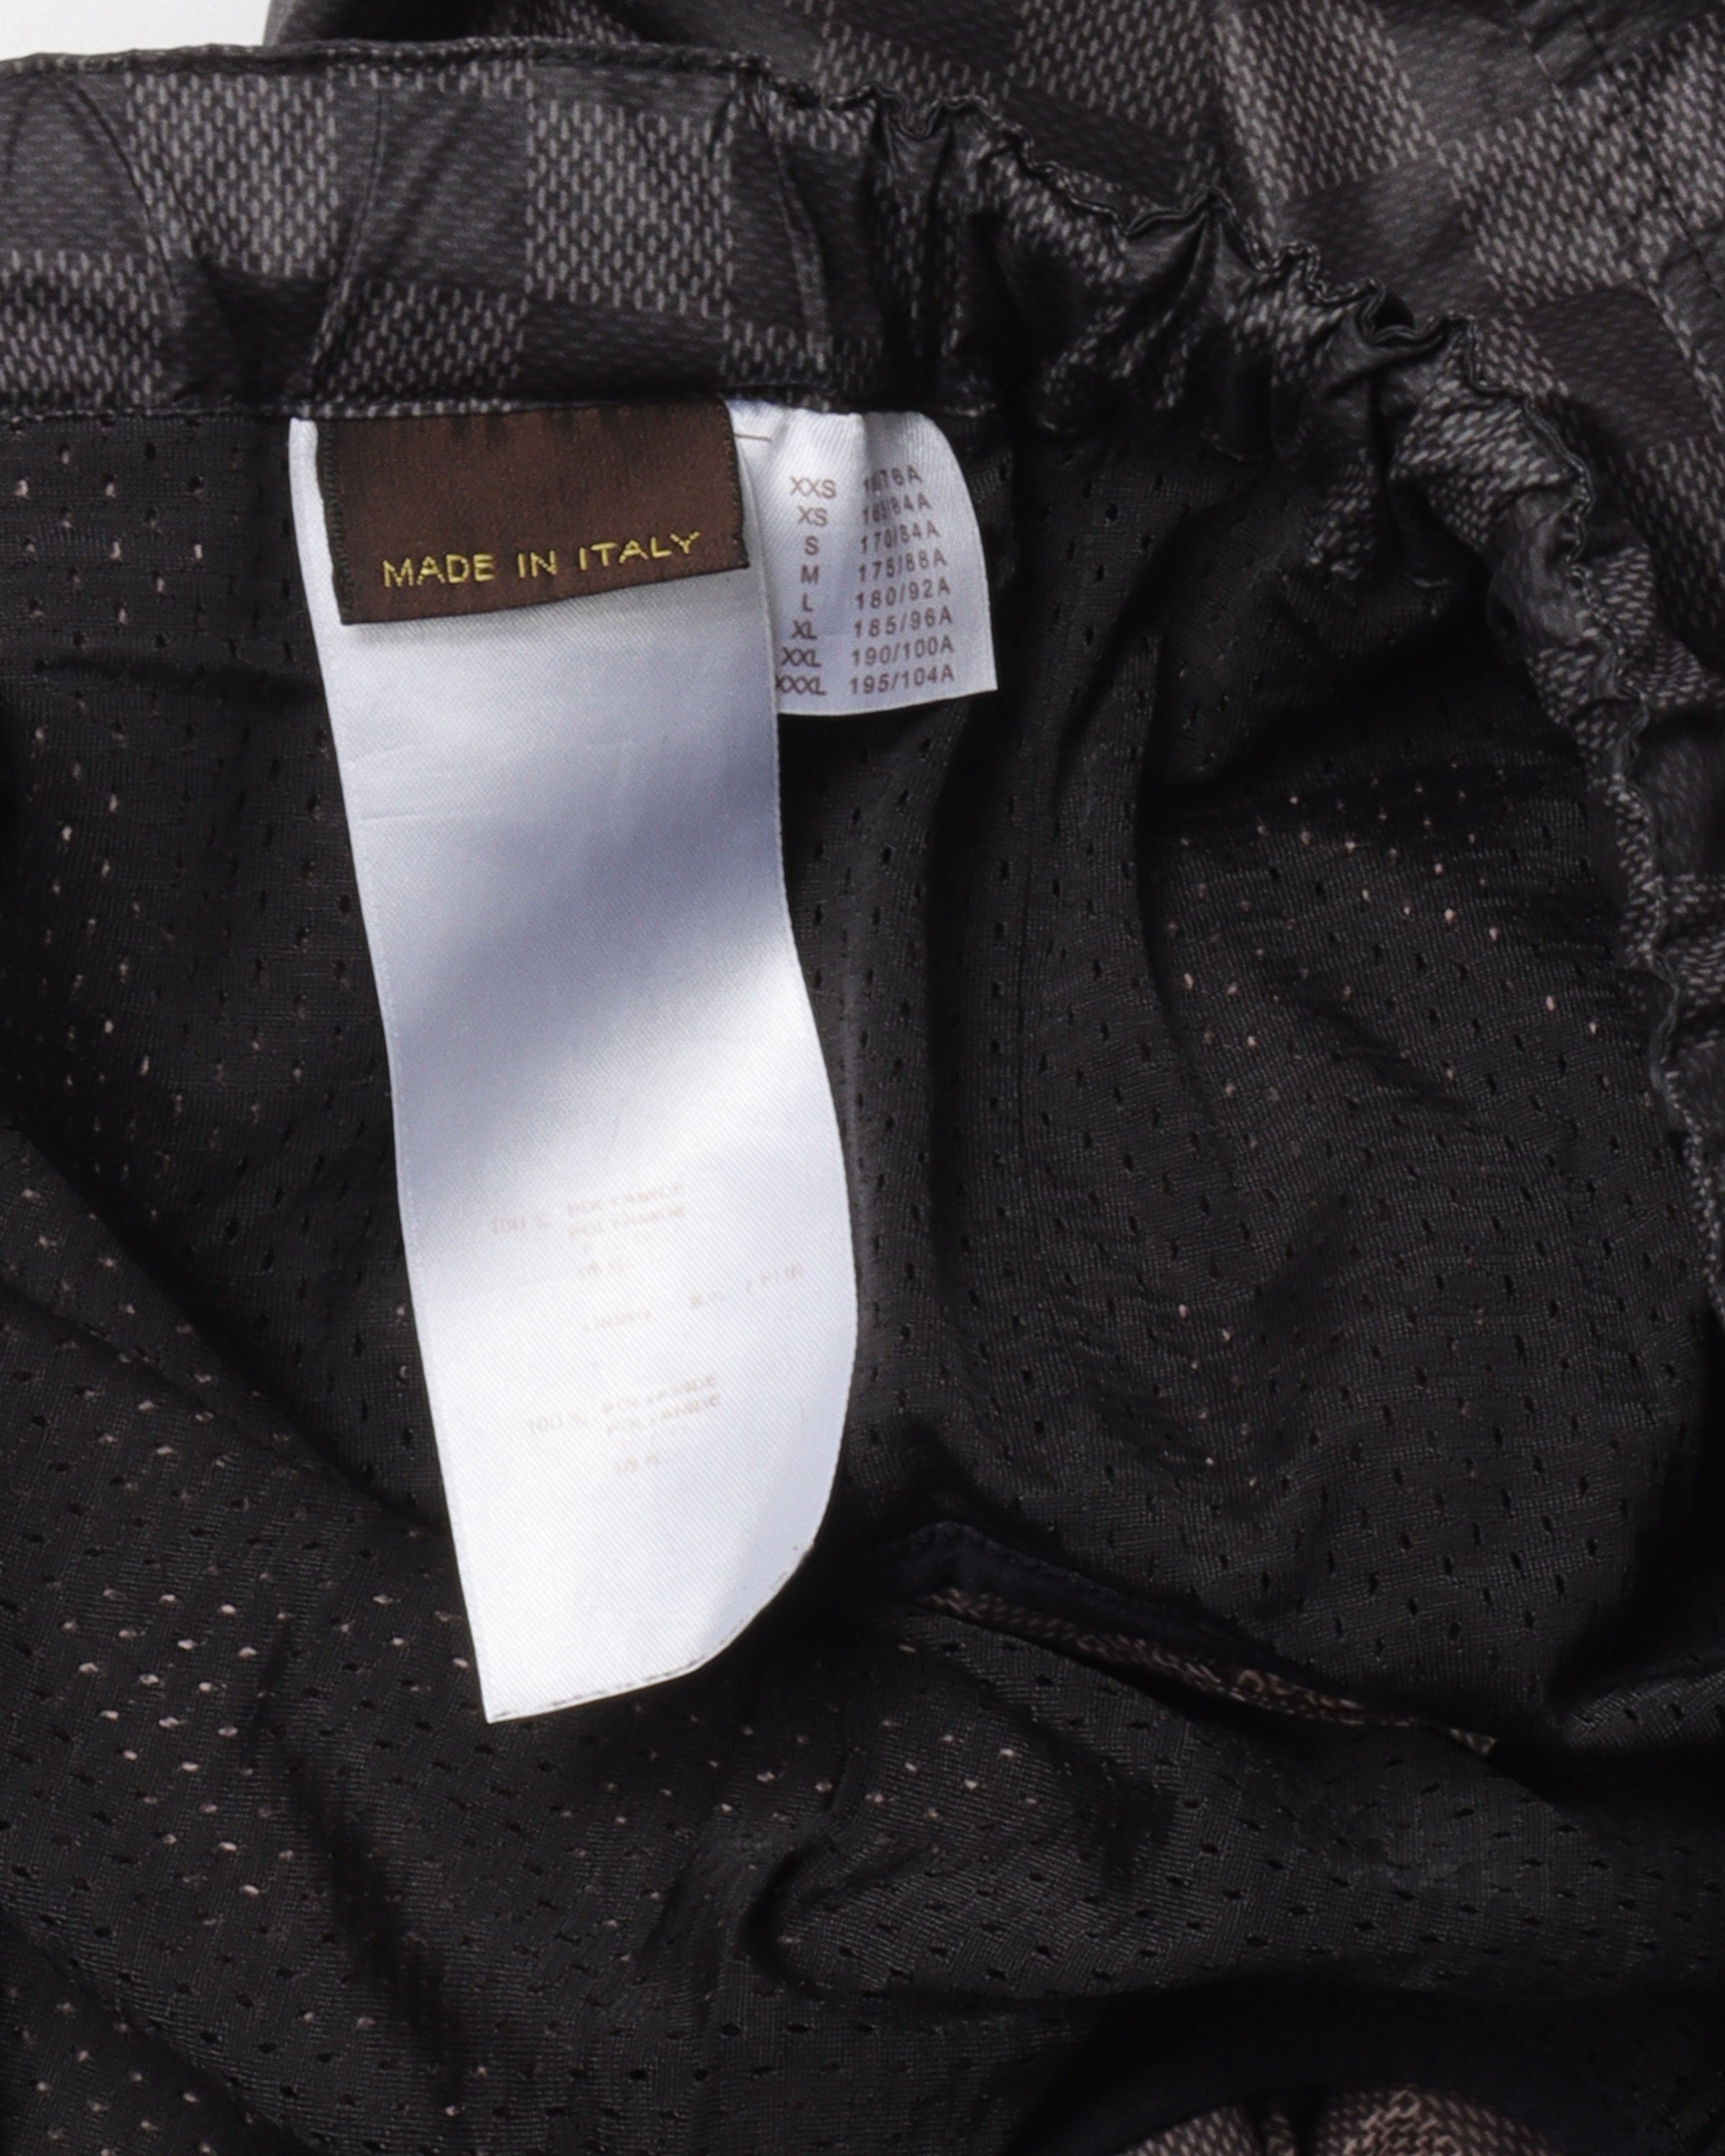 Louis Vuitton Woven Swim Trunks w/ Tags - Black, 11 Rise Swimwear,  Clothing - LOU206322